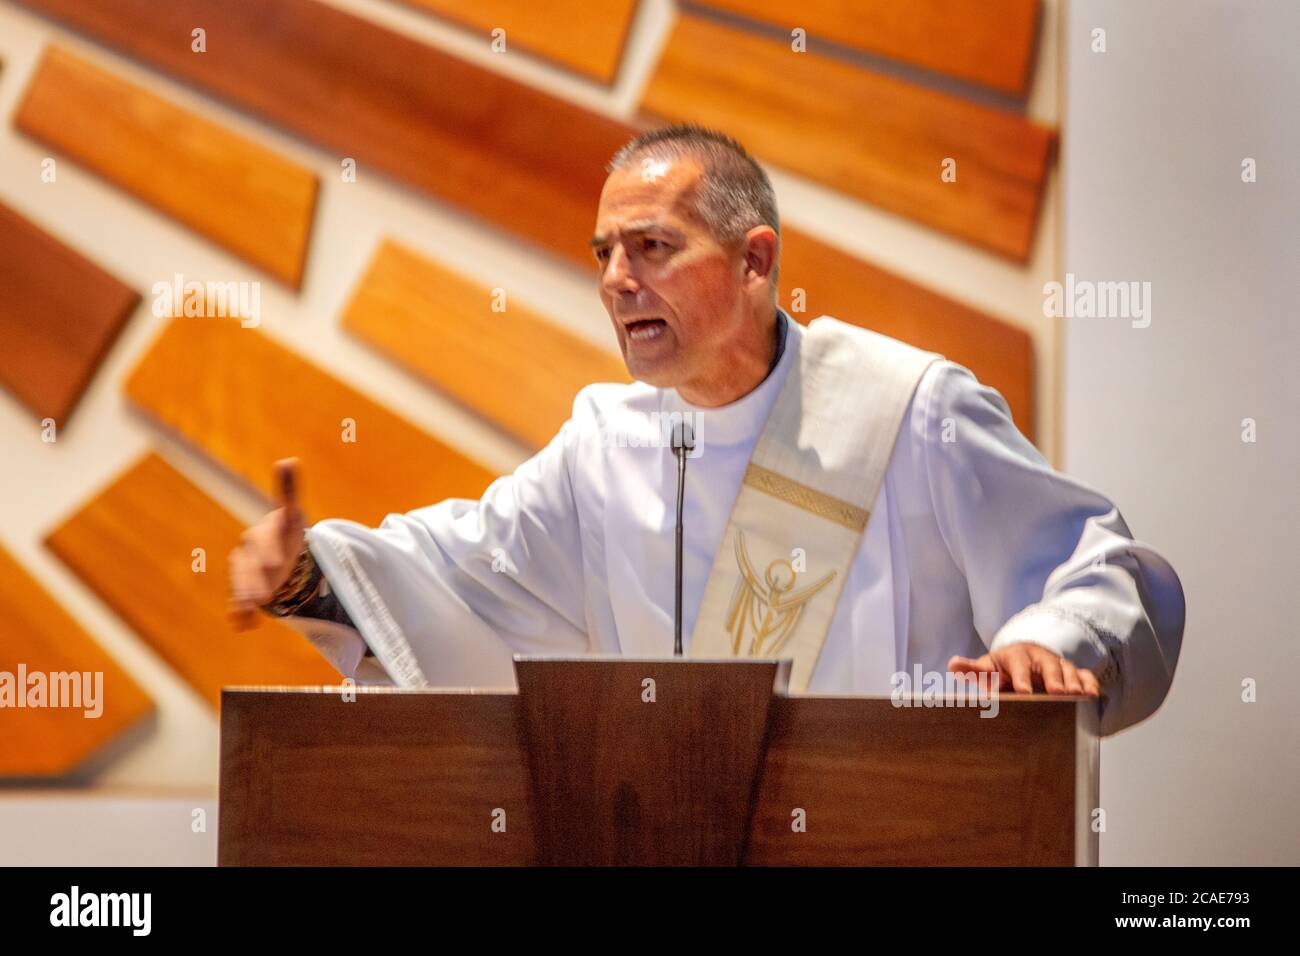 Portant une robe blanche, un diacre enthousiaste prêche un sermon dans la chaire d'une église catholique de Tustin, CA. Banque D'Images